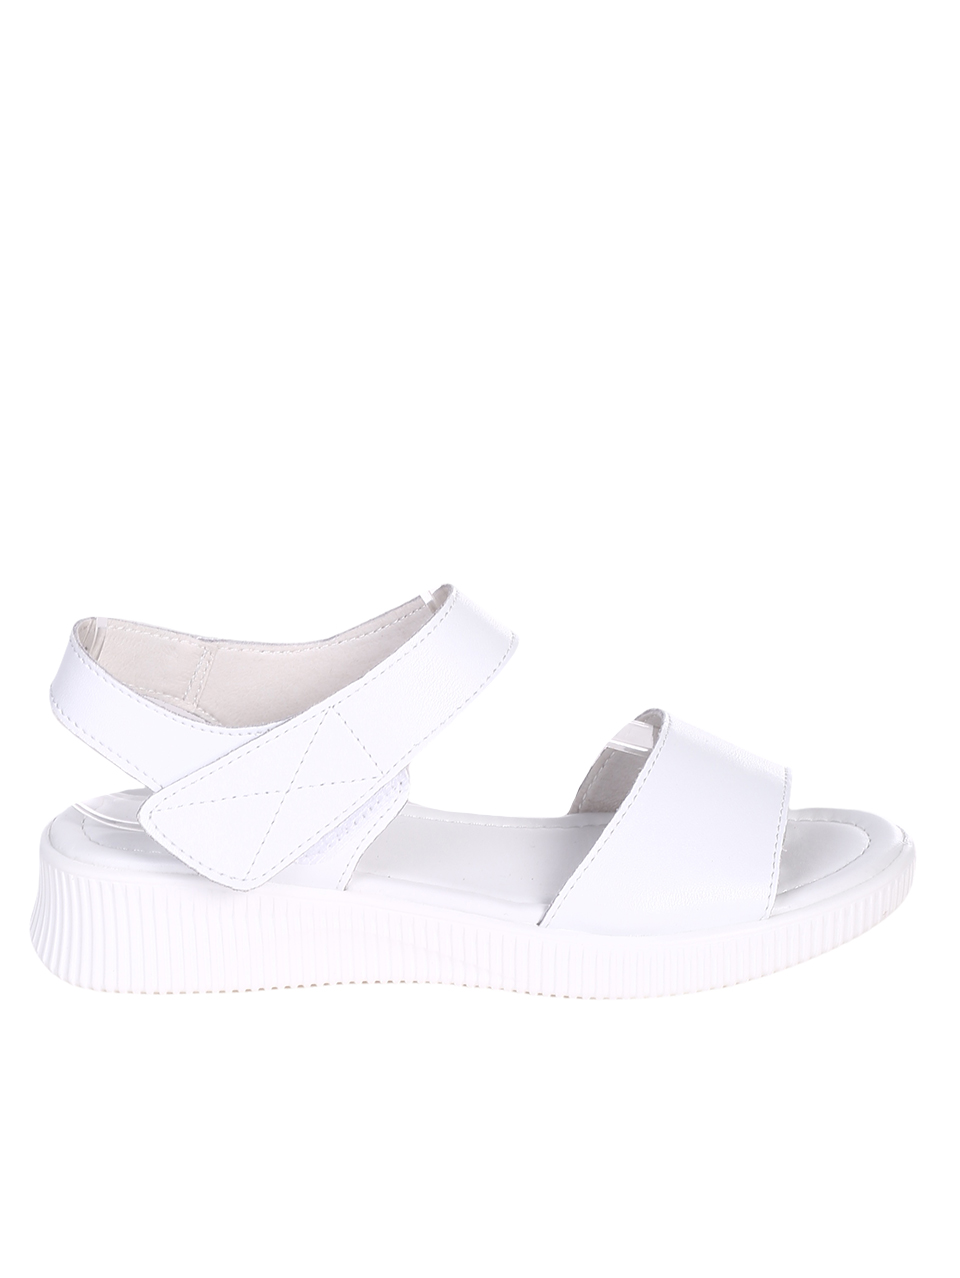 Ежедневни дамски сандали от естествена кожа в бяло 4AF-23168 white